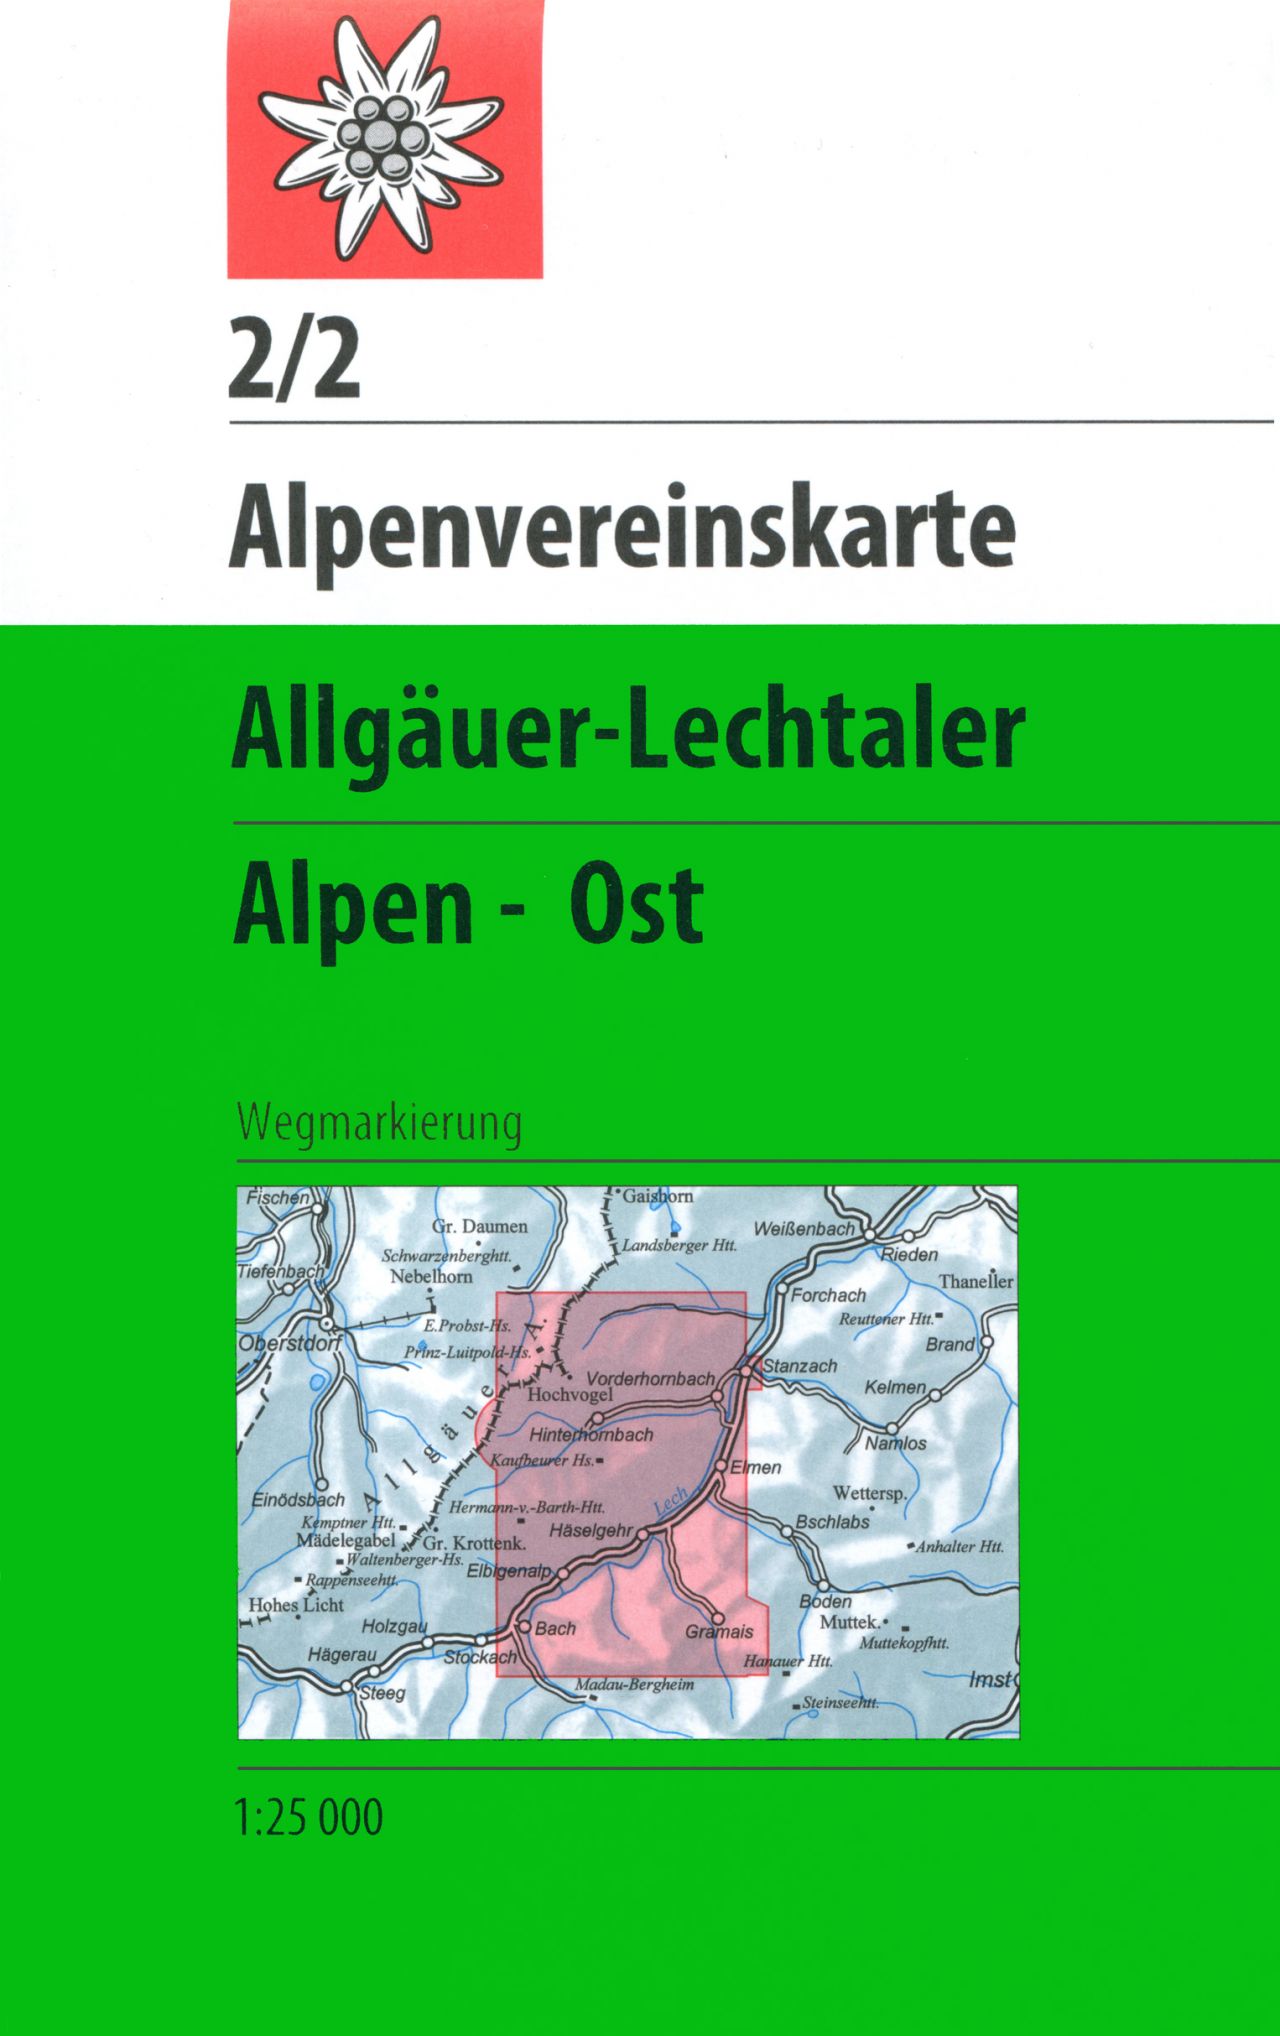 Online bestellen: Wandelkaart 02/2 Alpenvereinskarte Allgäuer - Lechtaler Alpen, Ost | Alpenverein